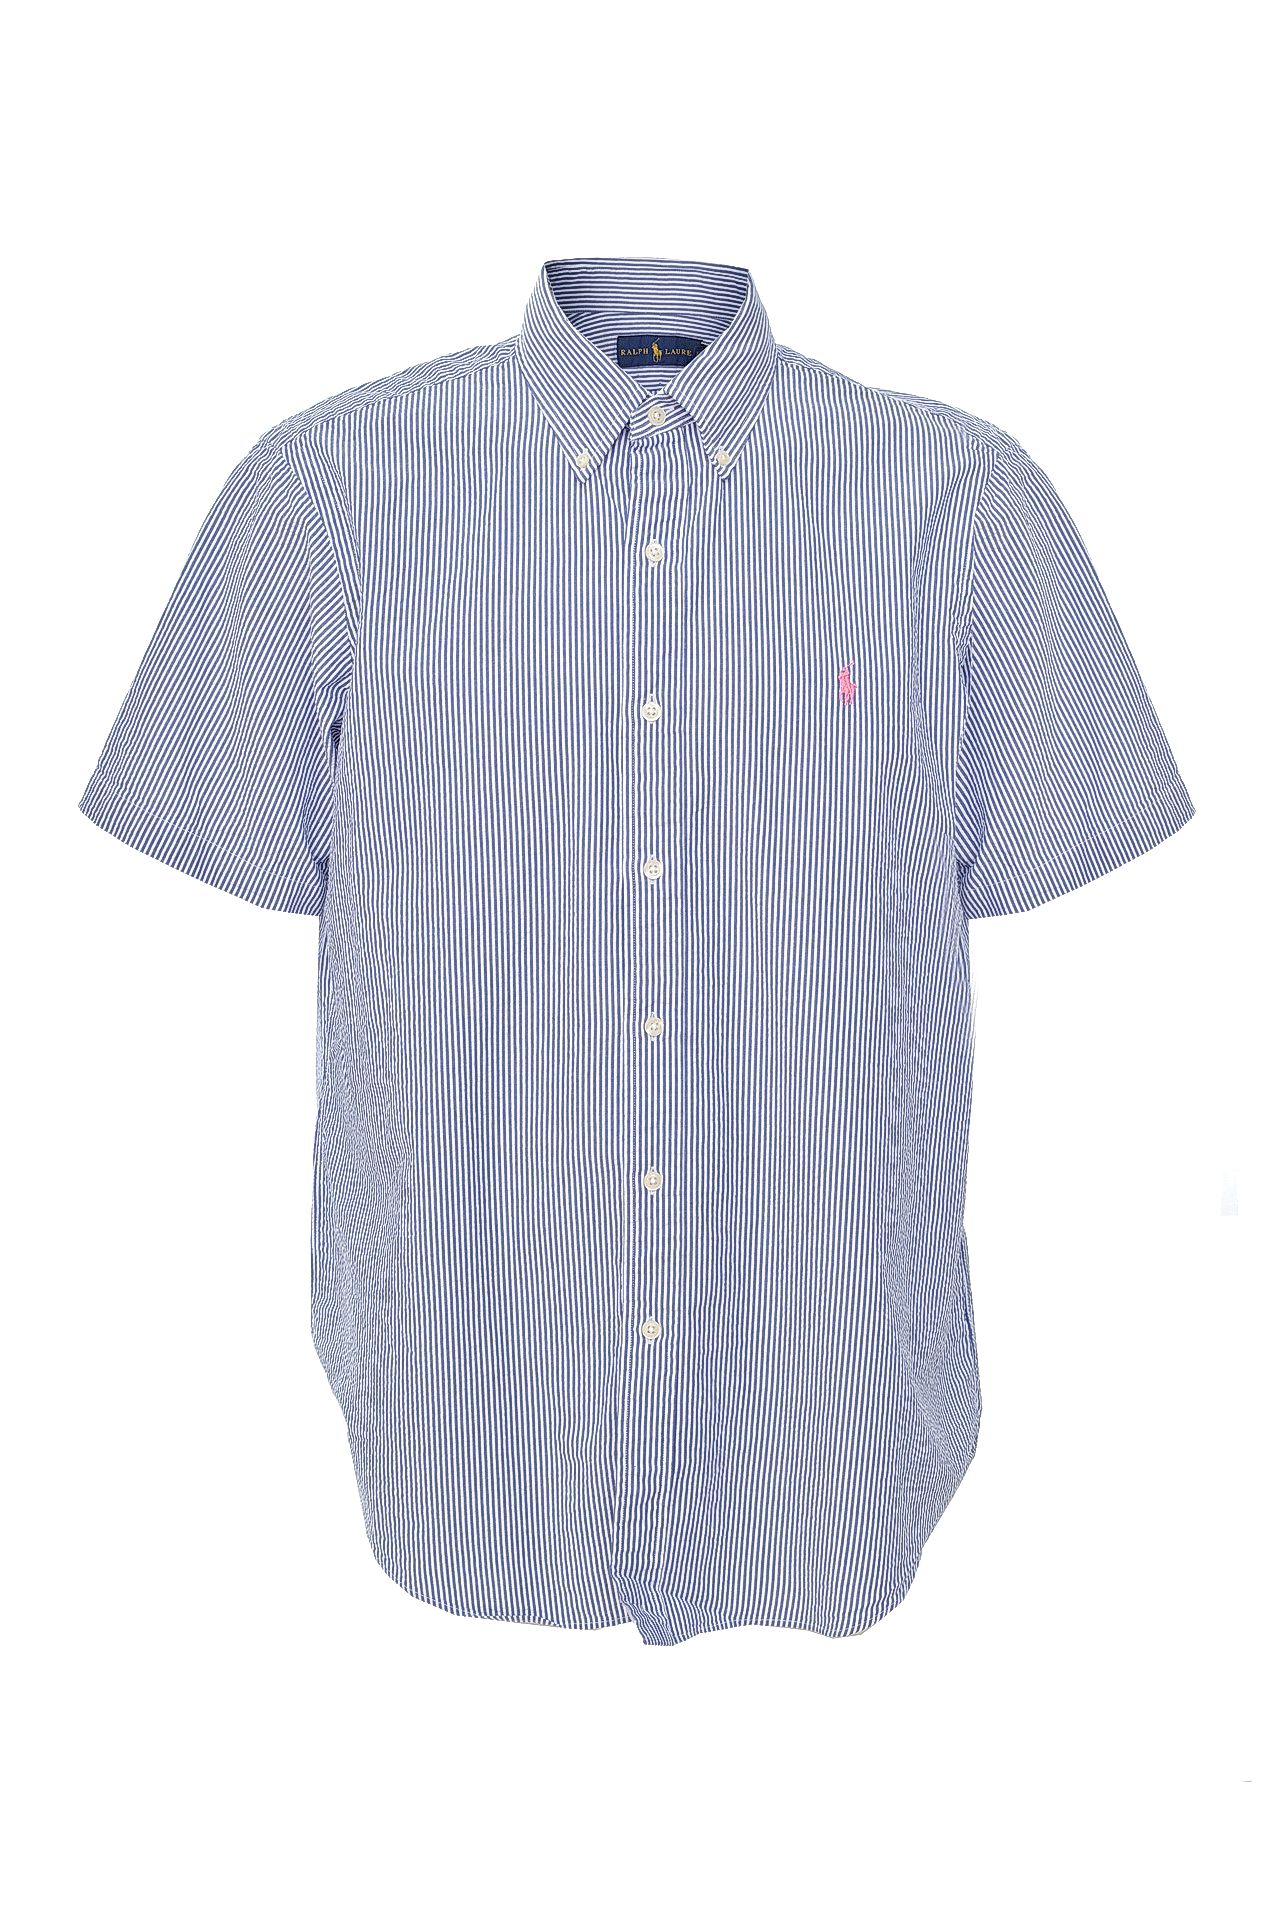 Одежда мужская Рубашка POLO RALPH LAUREN (3562100012006/17.2). Купить за 4830 руб.